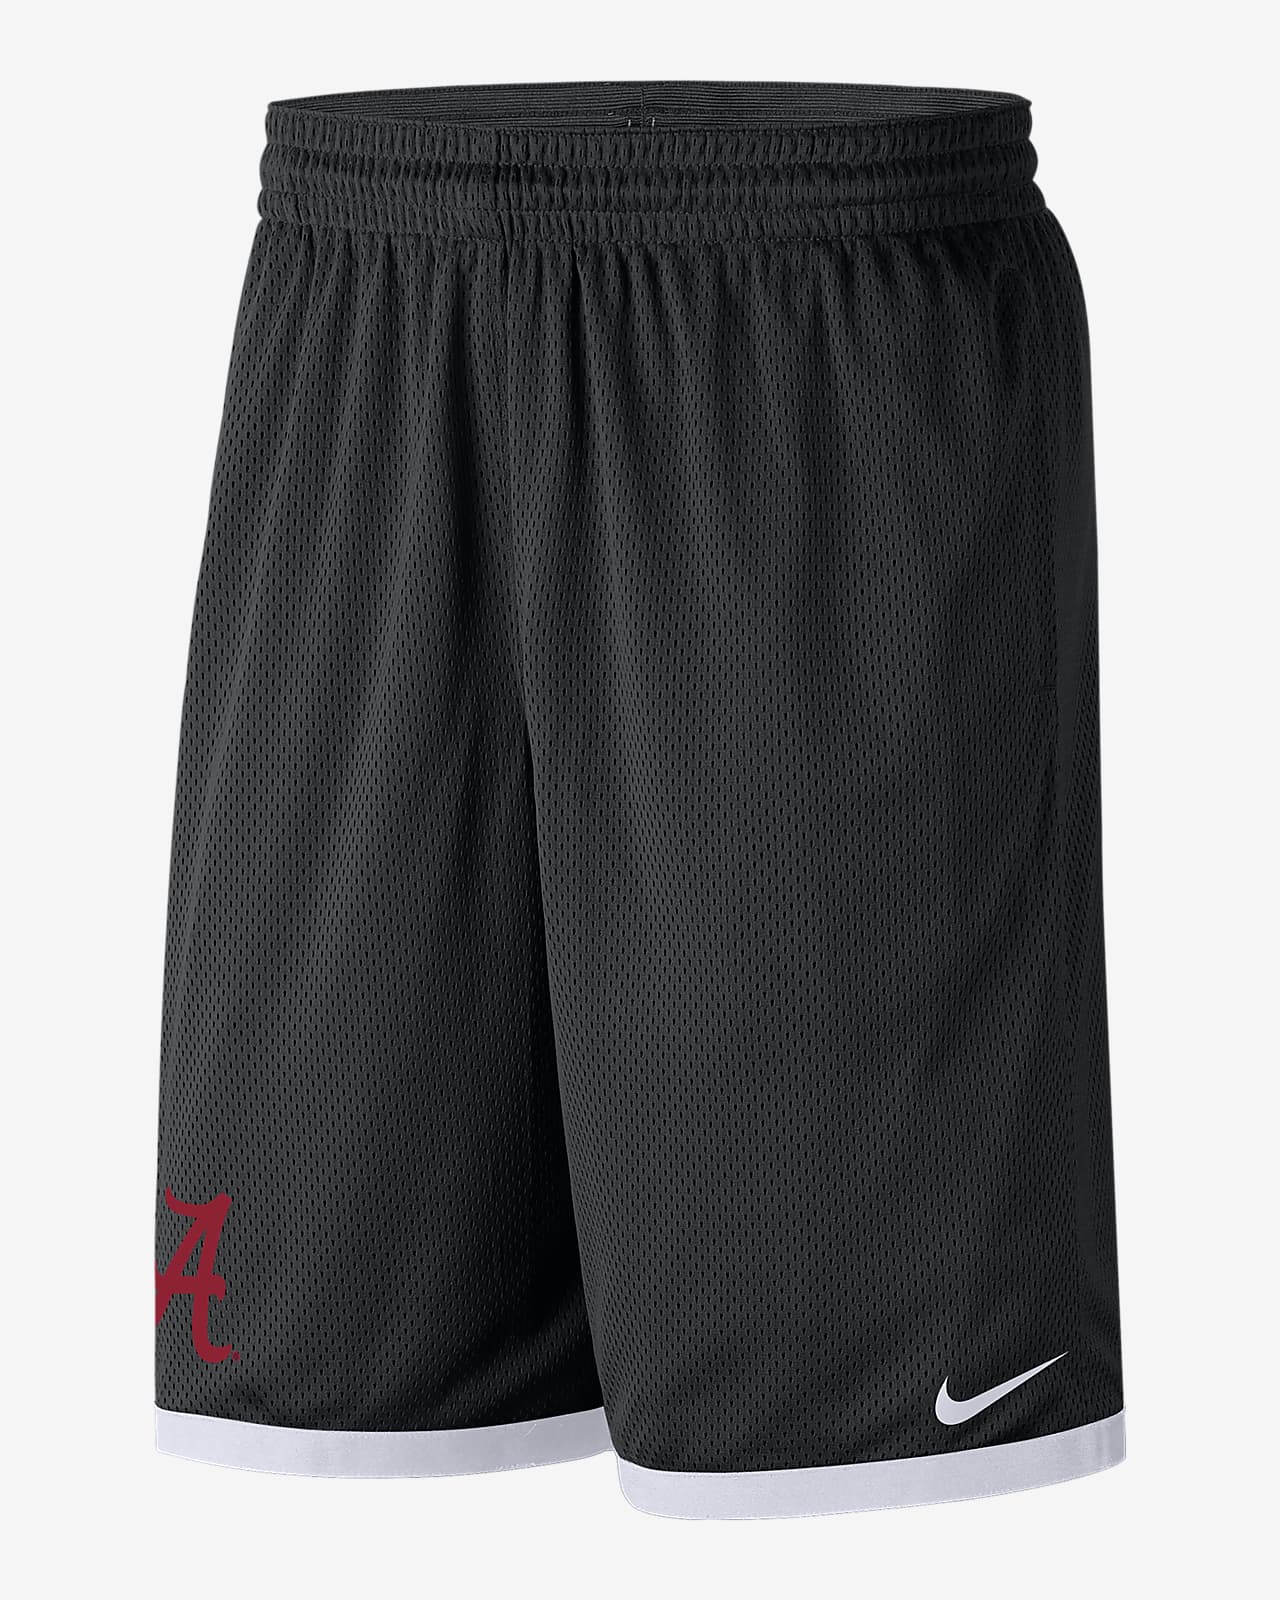 Alabama Men's Nike College Mesh Shorts